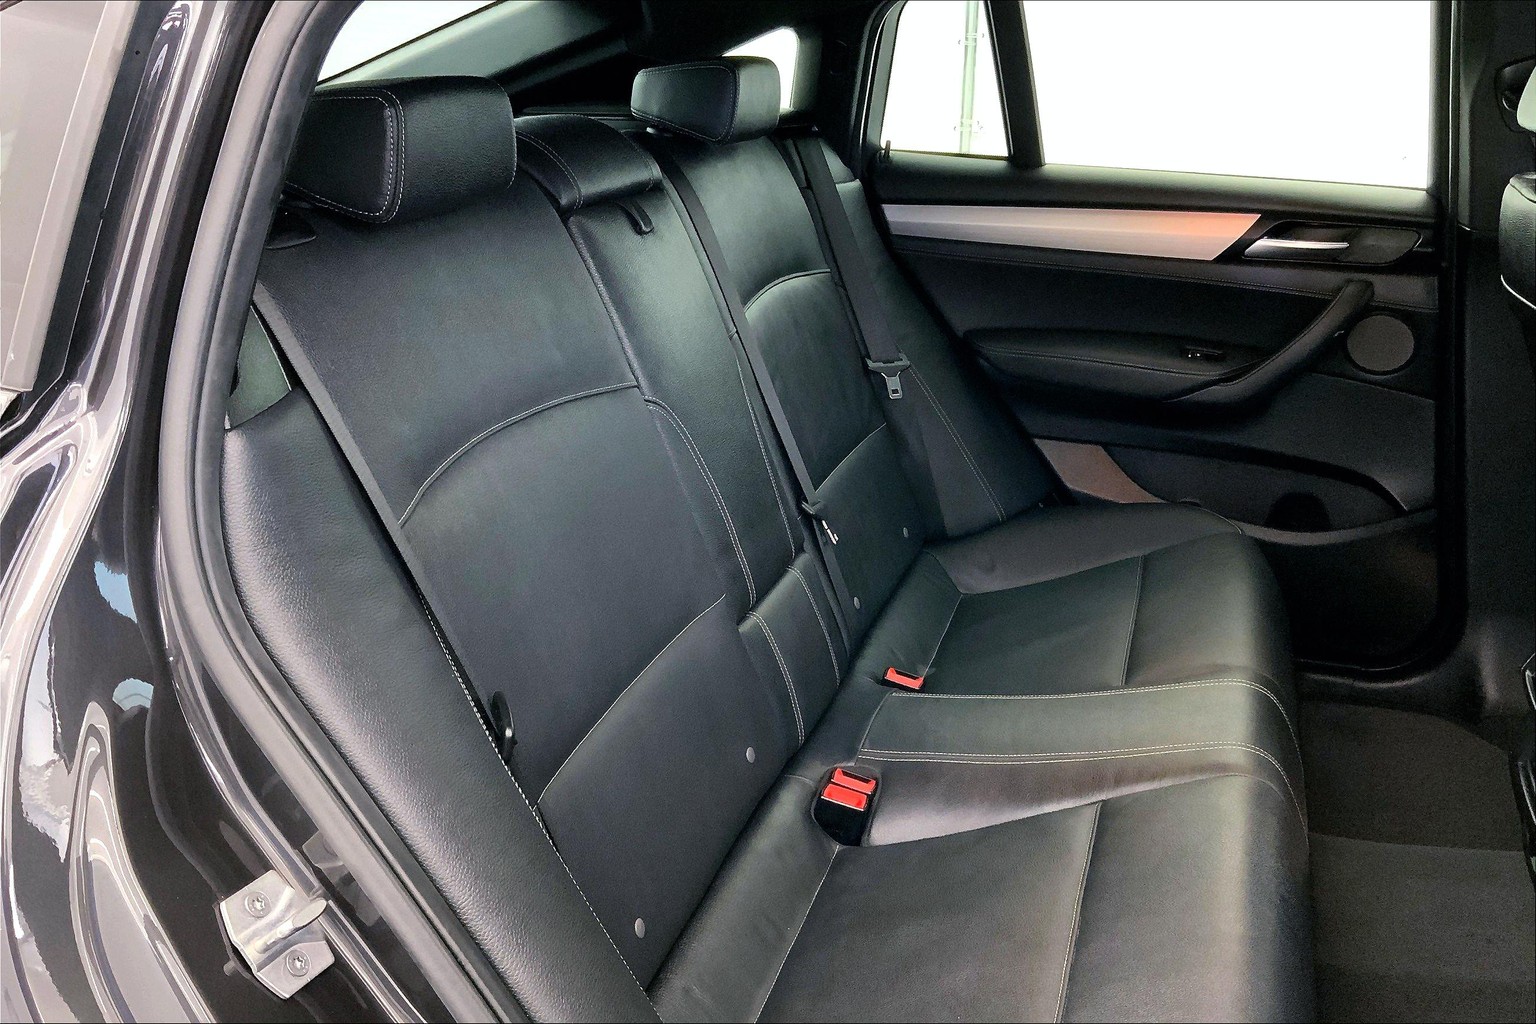 For BMW E46 Sedan Touring Body Door Side Mouldings Set 4Dr OEM Black ABS